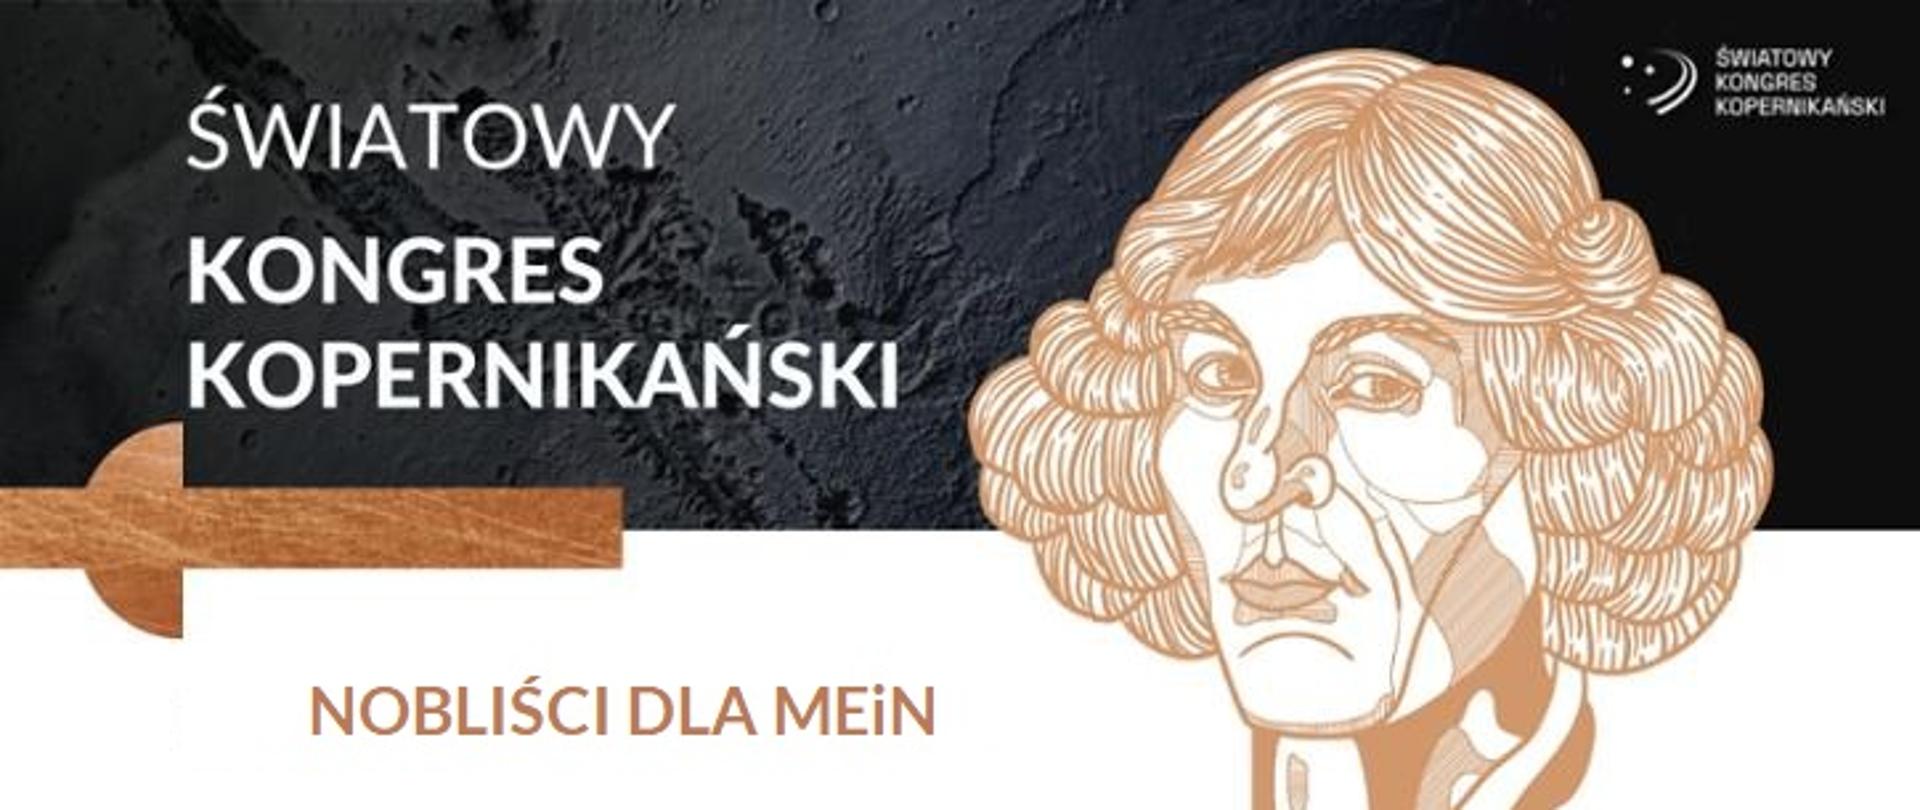 Grafika z podobizną Mikołaja Kopernika z podpisem Światowy_Kongres_Kopernikański-_Nobliści_dla_MEiN